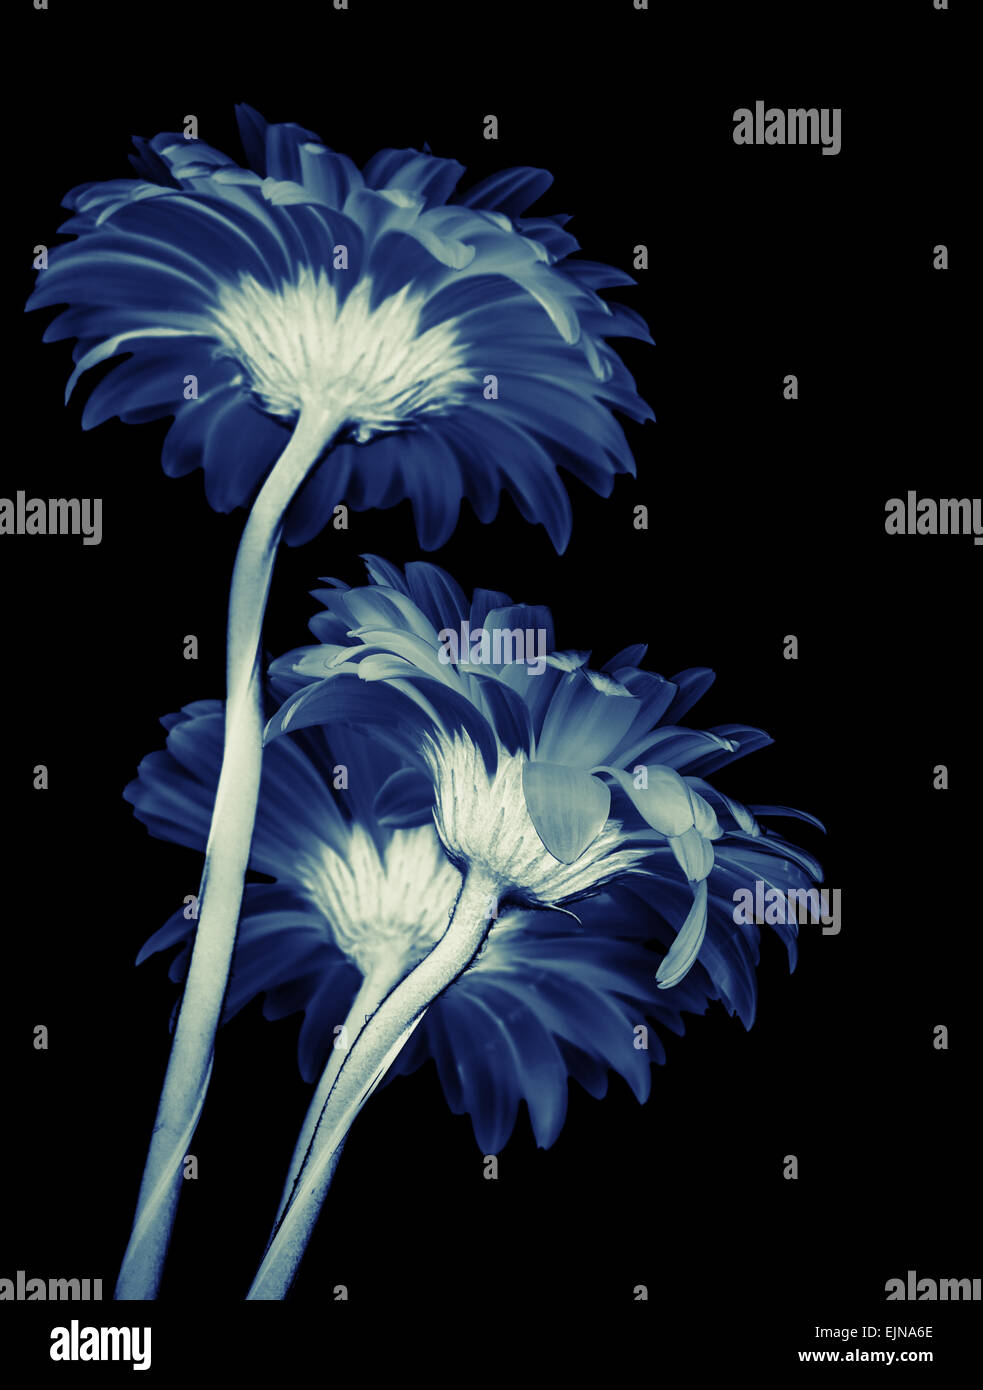 Gerbera fiori isolati su sfondo nero, nei toni del blu stilizzata foto macro con DOF poco profondo Foto Stock